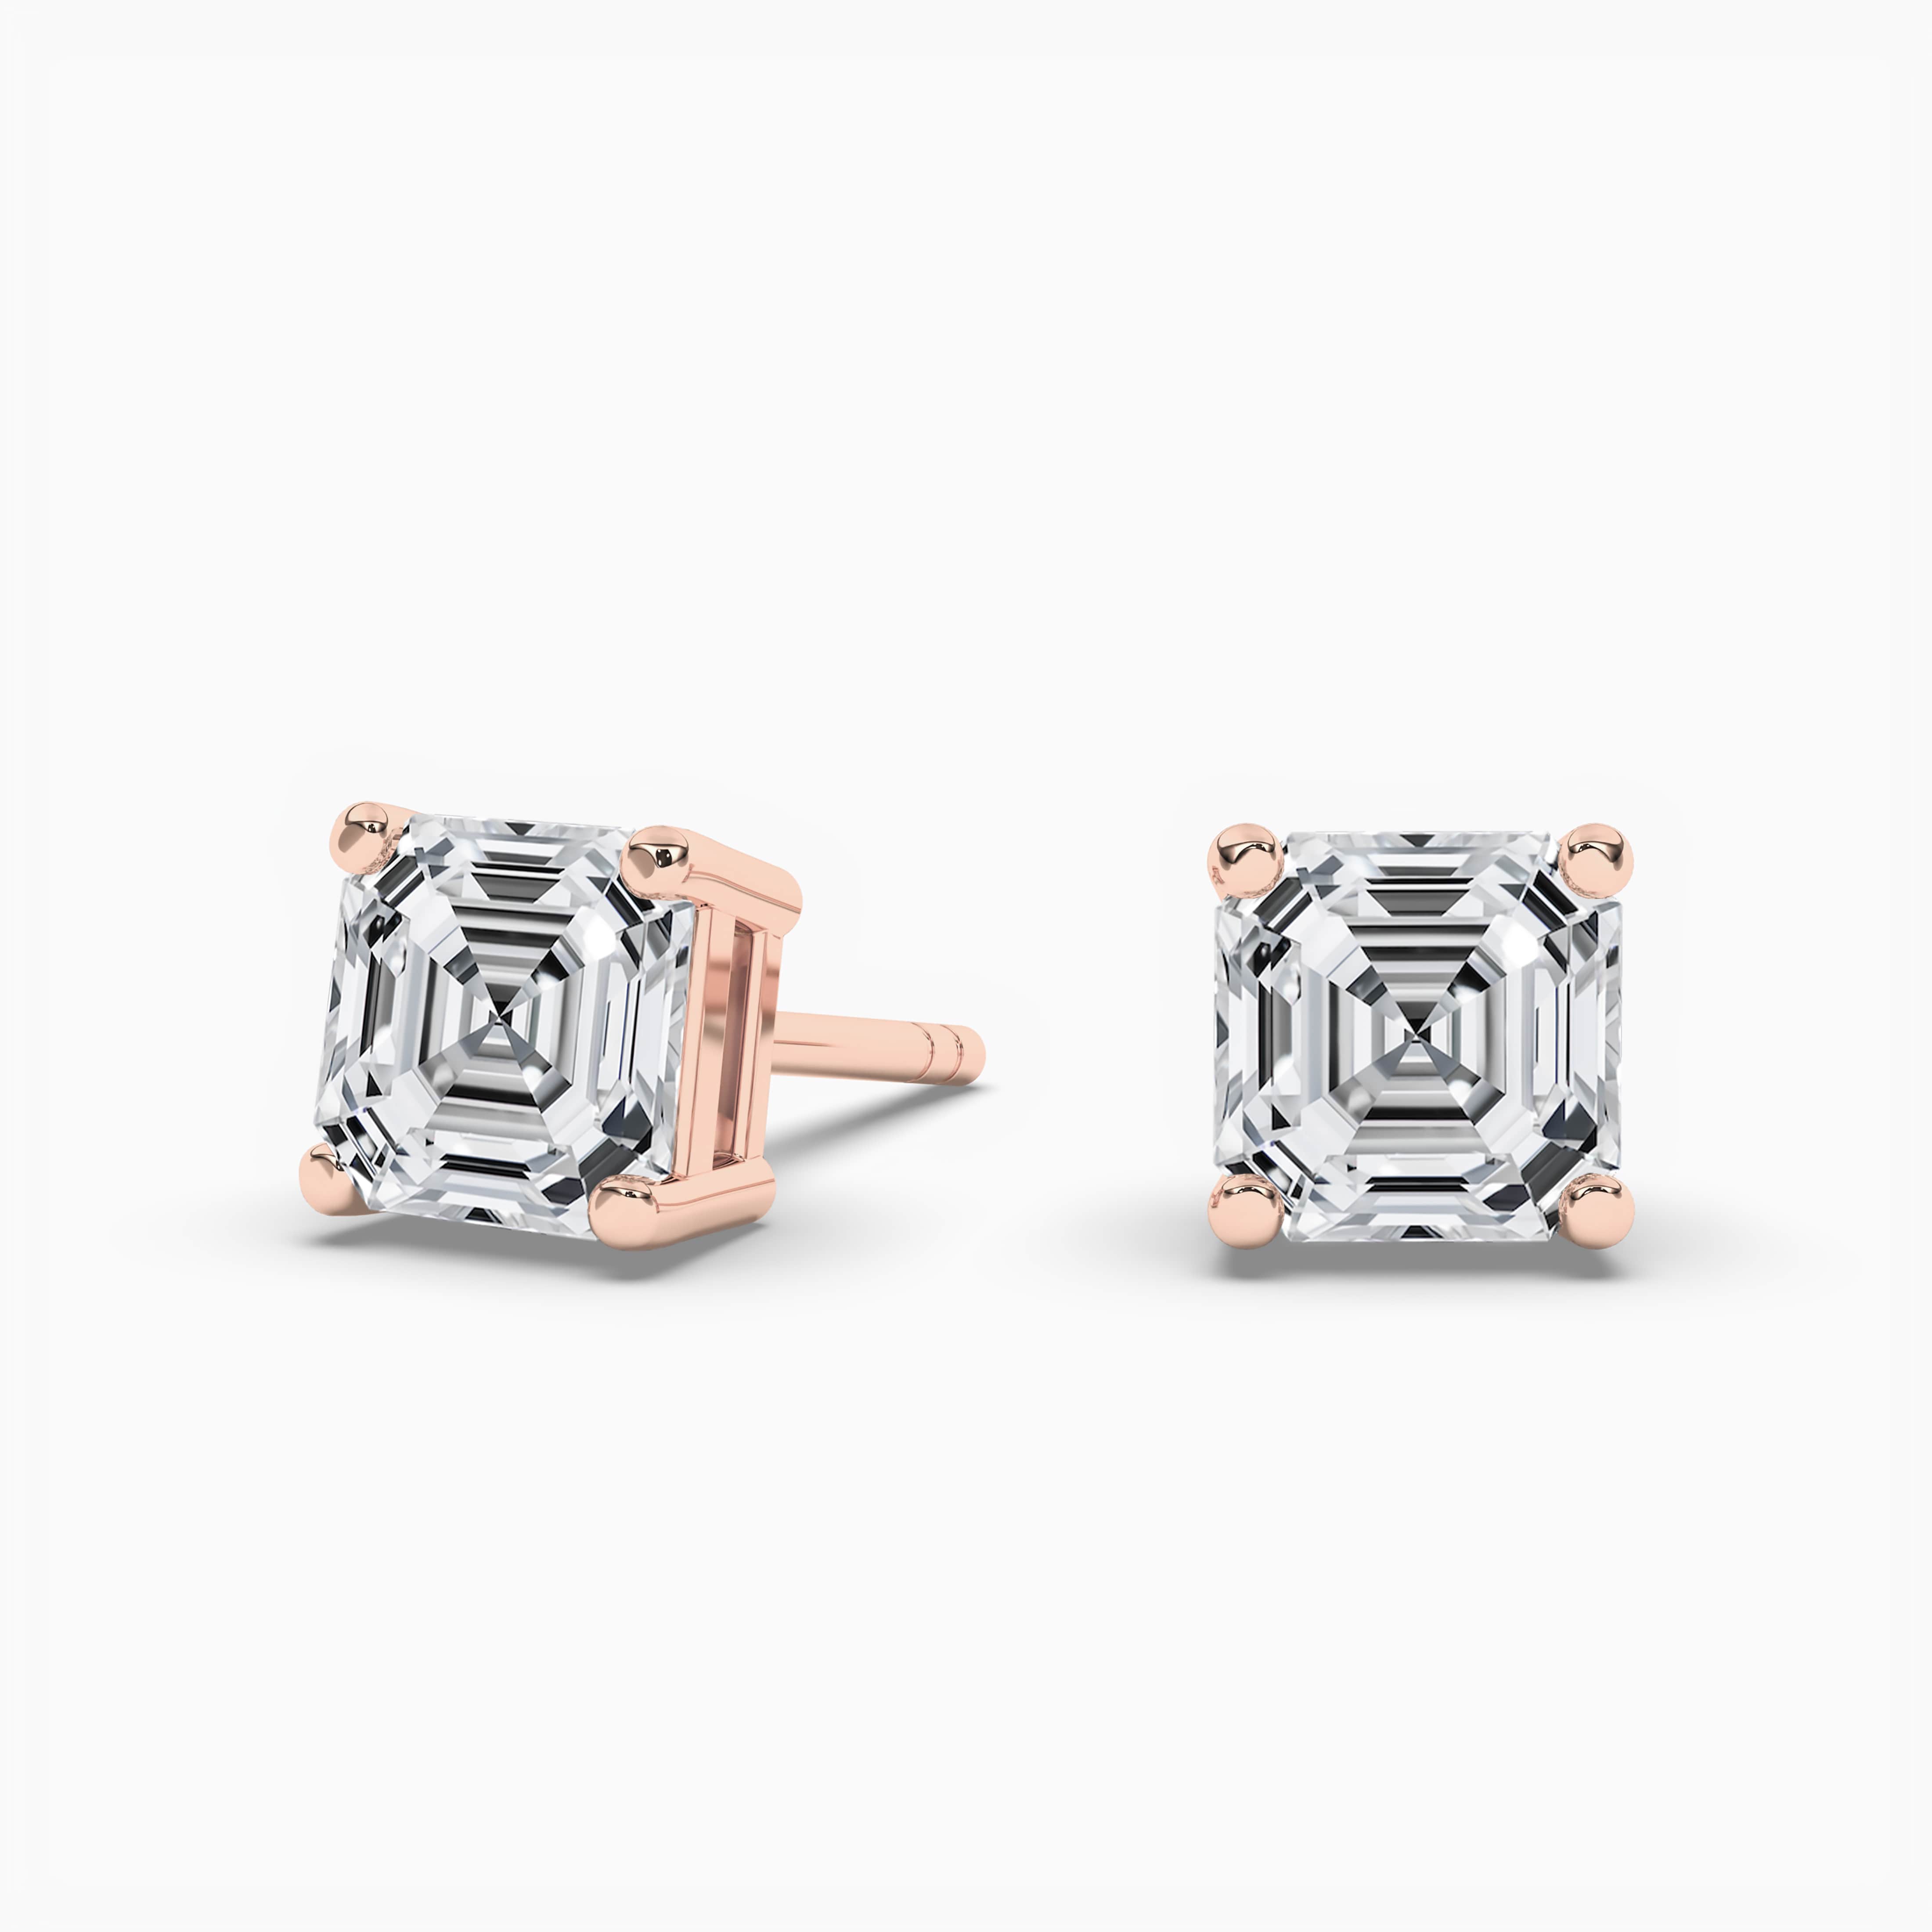 14k rose gold Asscher cut solitaire diamond stud earrings